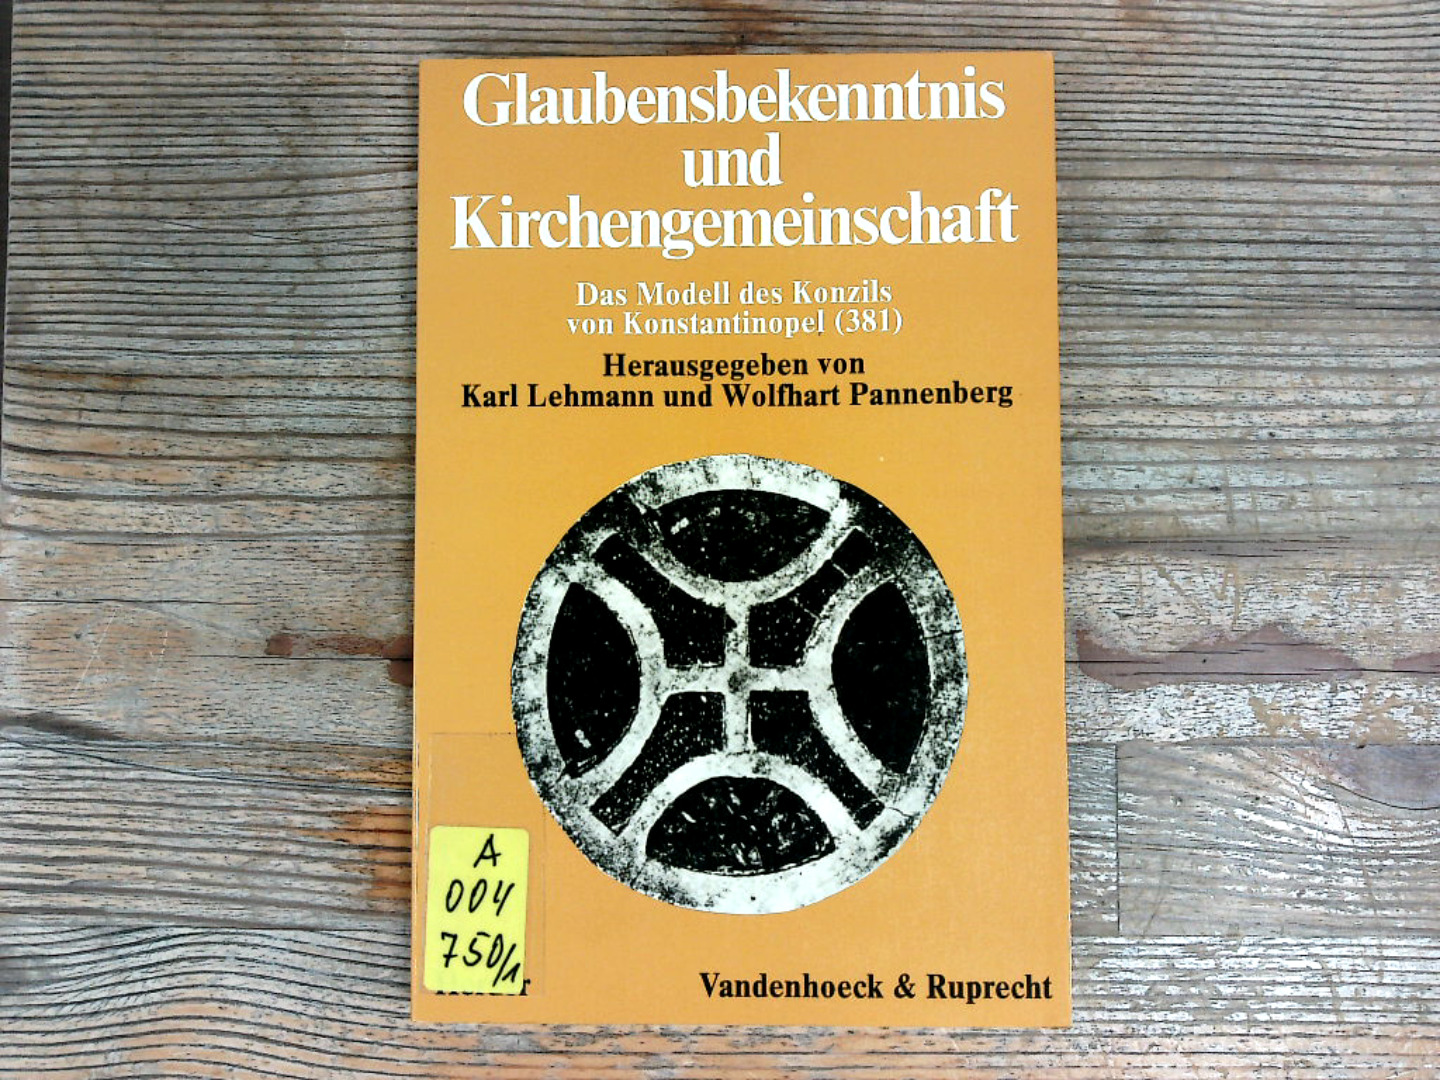 Glaubensbekenntnis und Kirchengemeinschaft. Das Modell des Konzils von Konstantinopel (381). - Lehmann, Karl, Wolfhart Pannenberg und A Ganoczy